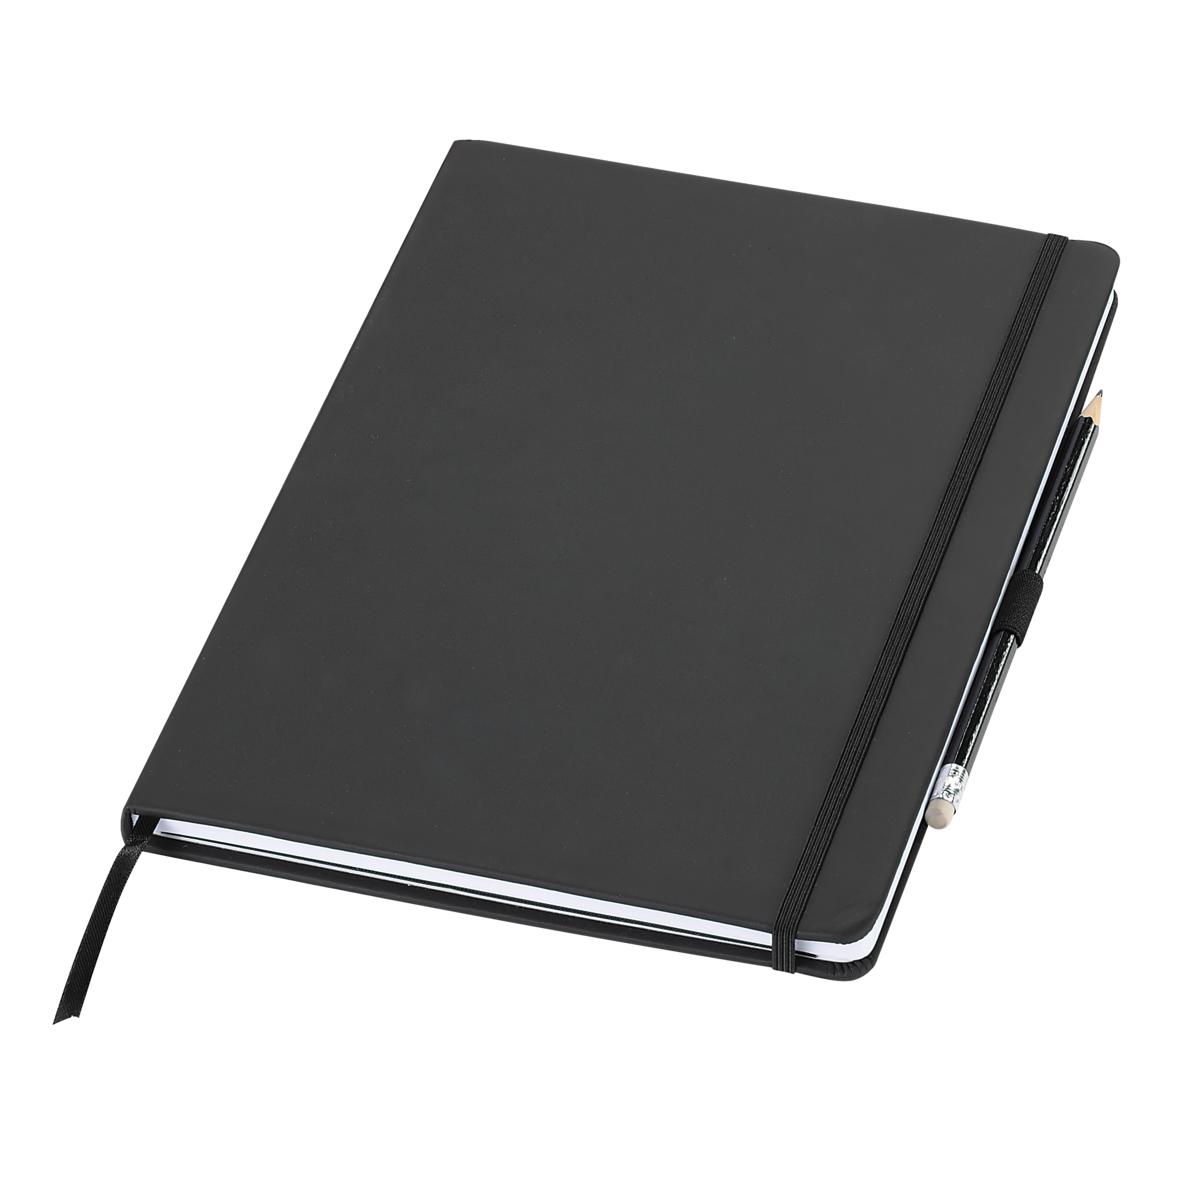 Beneden afronden mug Keizer Notebook "Agenda" A4, black-07093002-00001